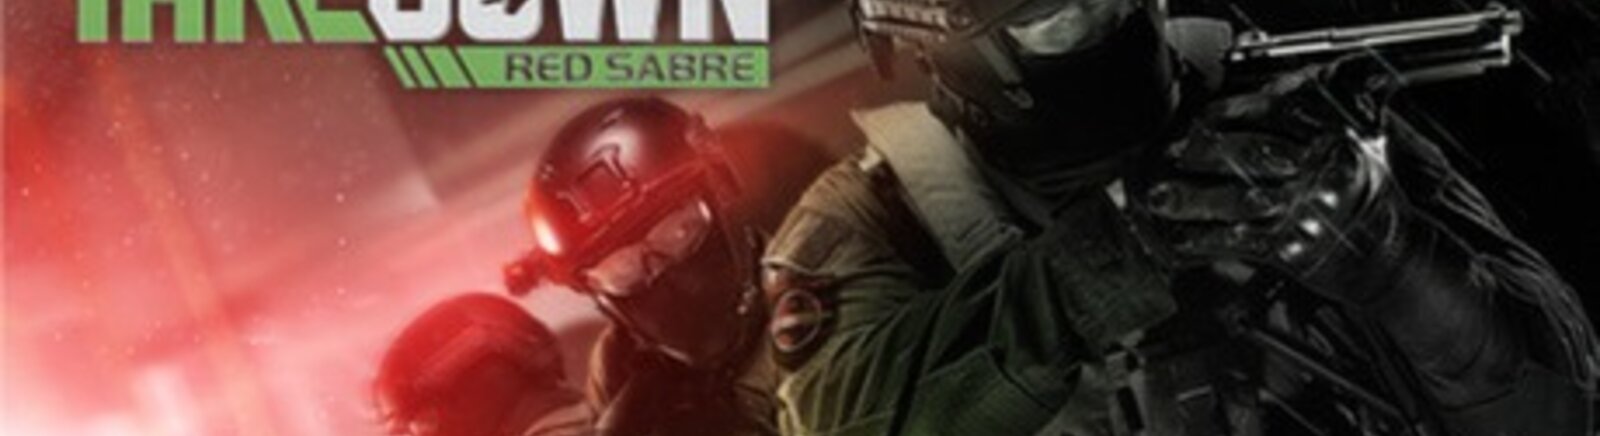 Дата выхода Takedown: Red Sabre  на PC и Xbox 360 в России и во всем мире